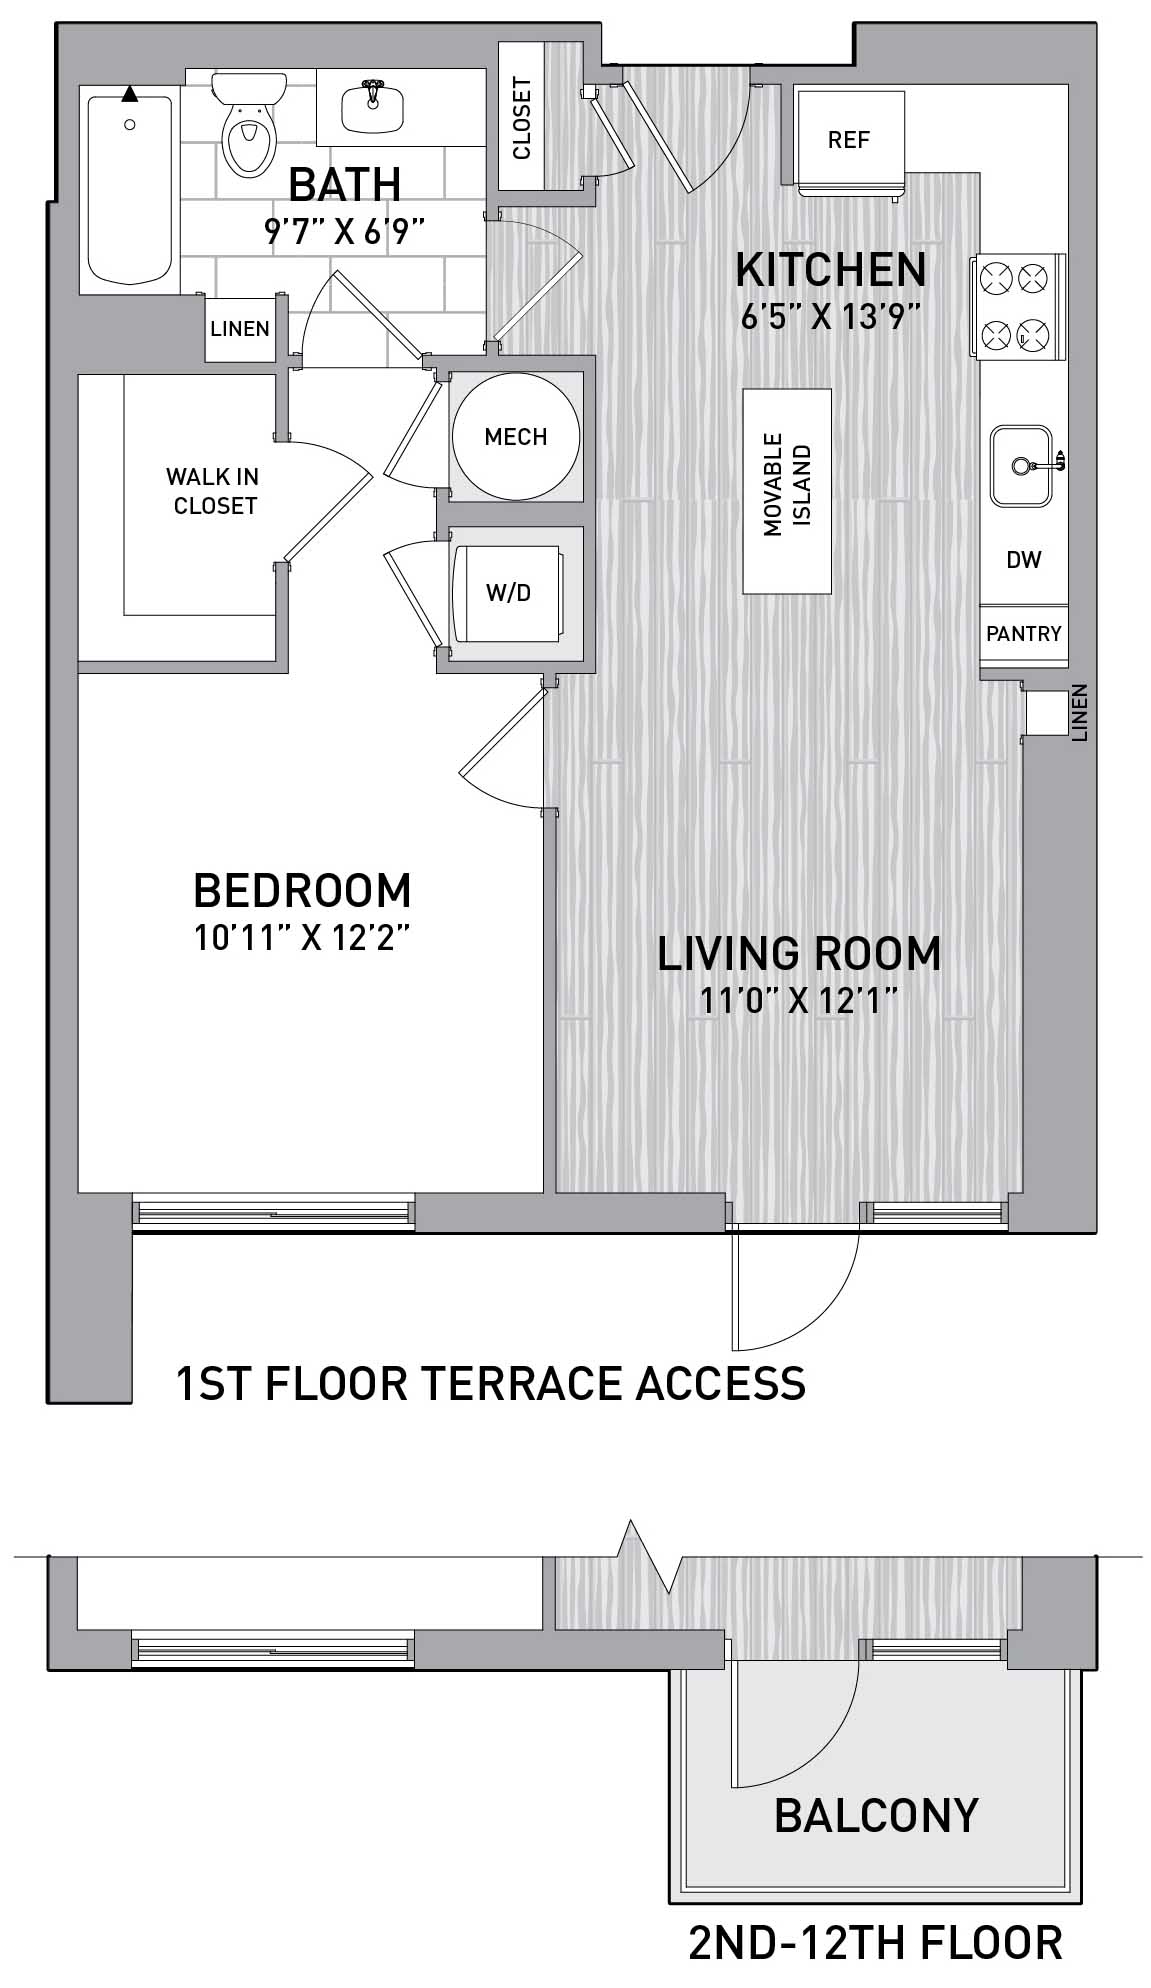 Floorplan Image of unit 151-0108